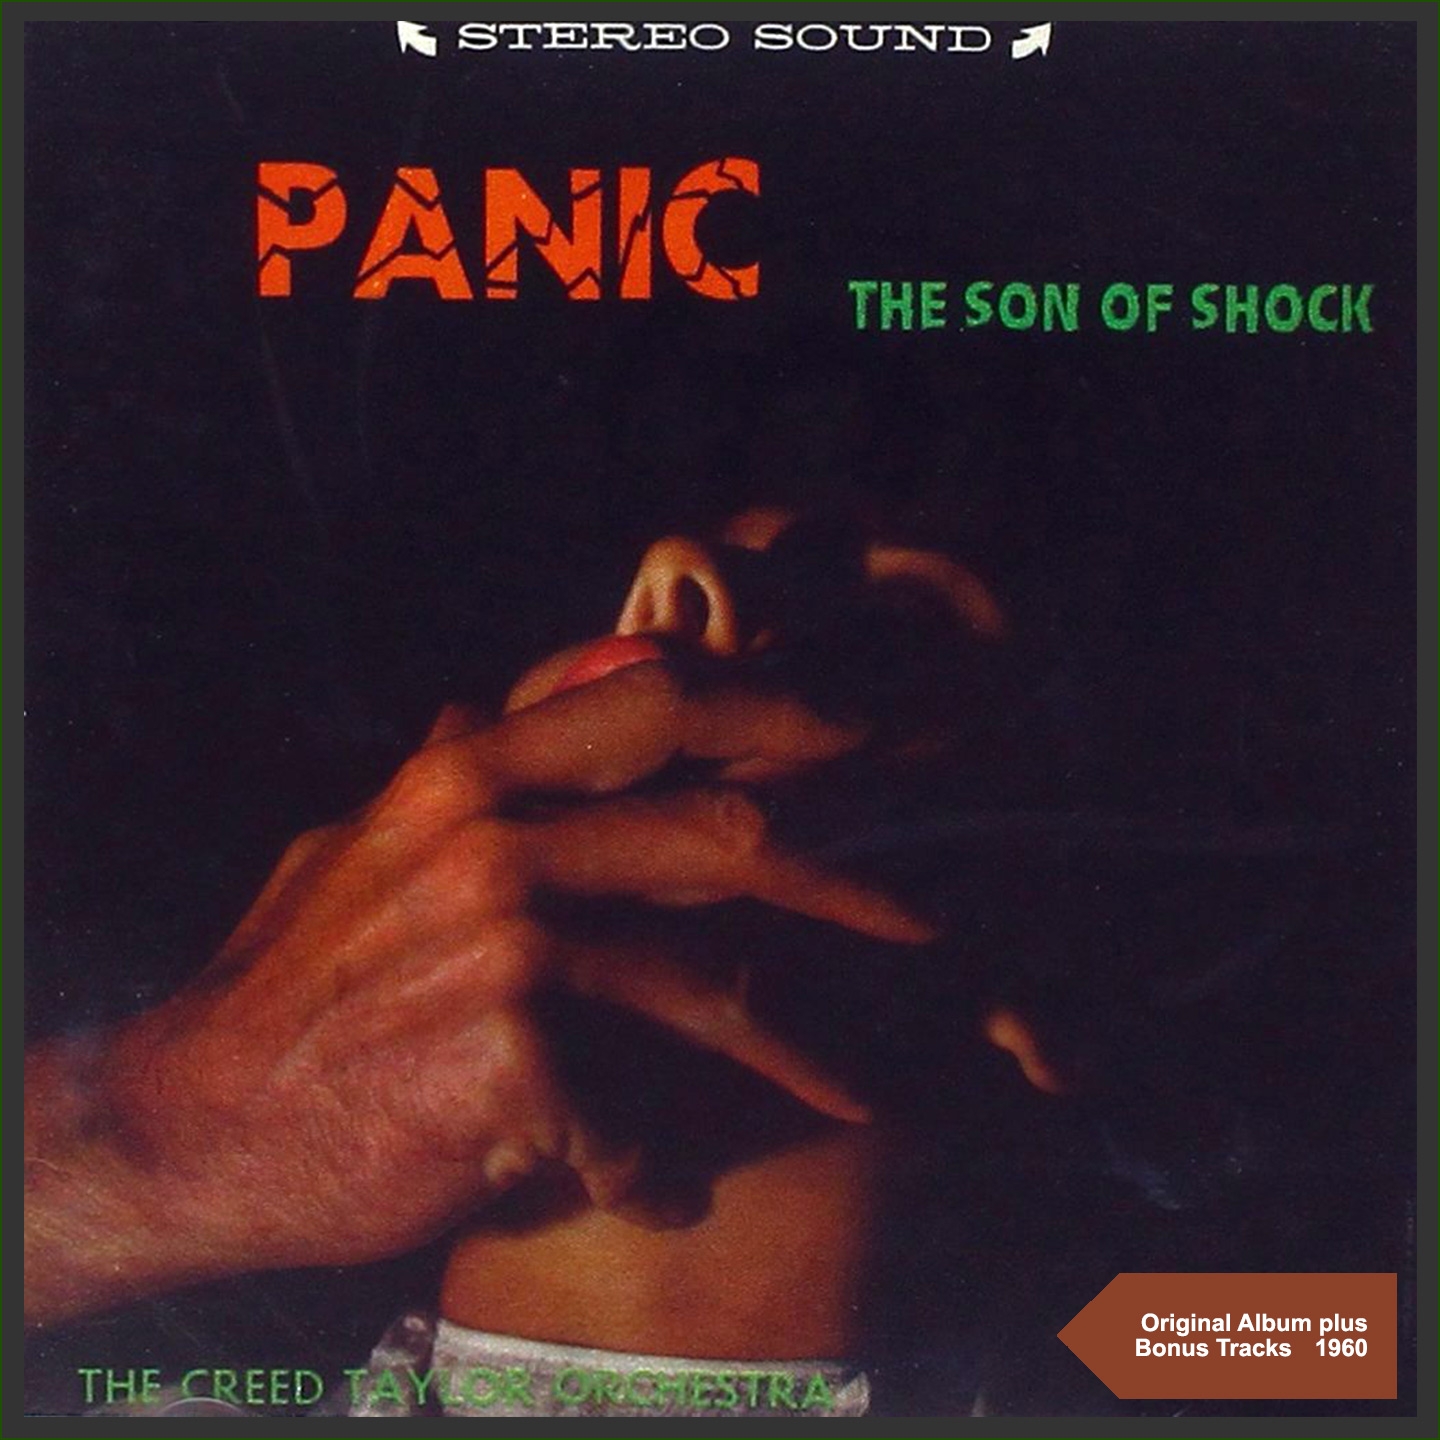 PANIC - The Son Of Shock (Original Album plus Bonus Tracks - 1960)